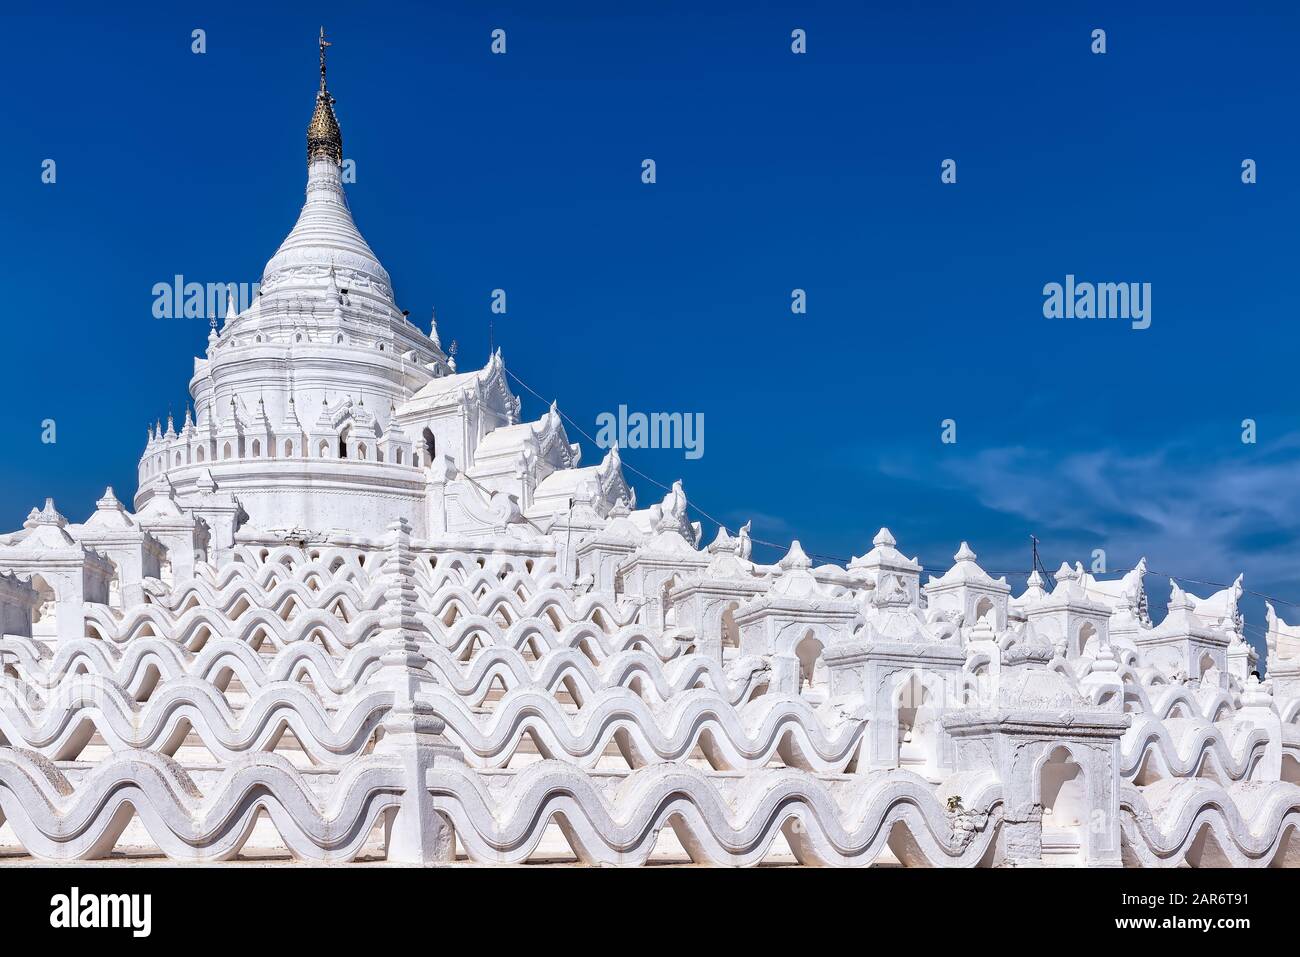 Pagoda Di Hsinbyume A Mingun, Myanmar. Il disegno della pagoda si basa sulle descrizioni della mitica pagoda Sulamani sul Monte Meru Foto Stock